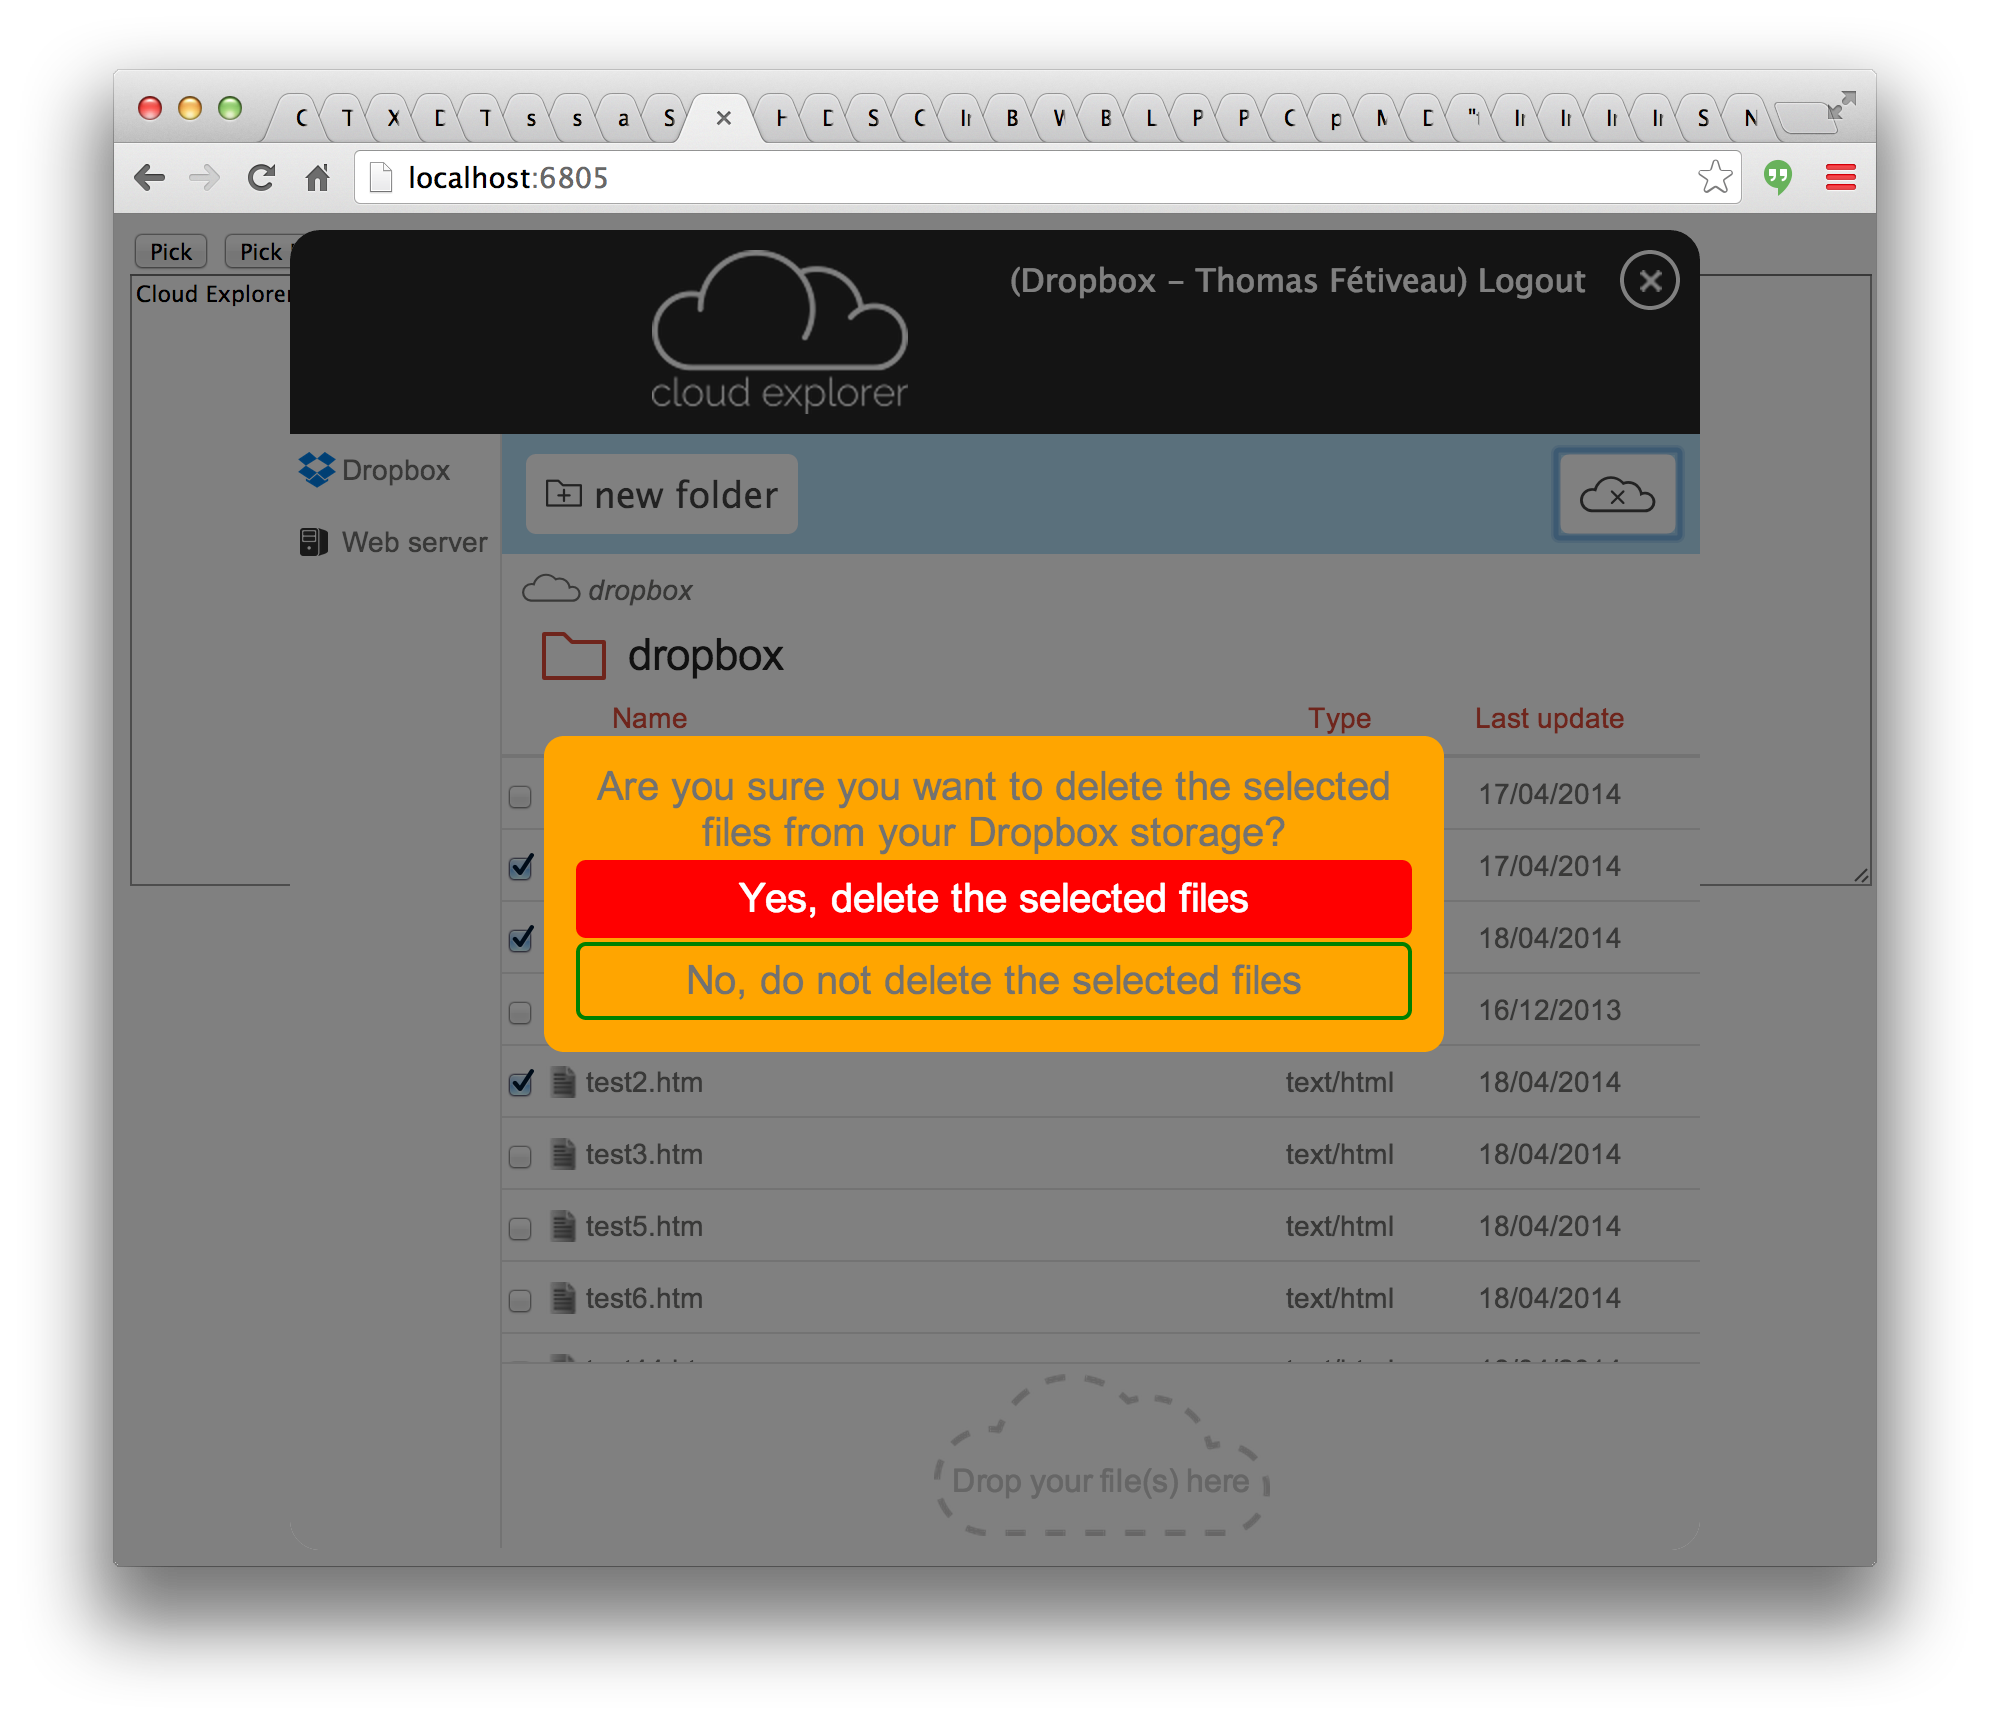 Cloud explorer user interface